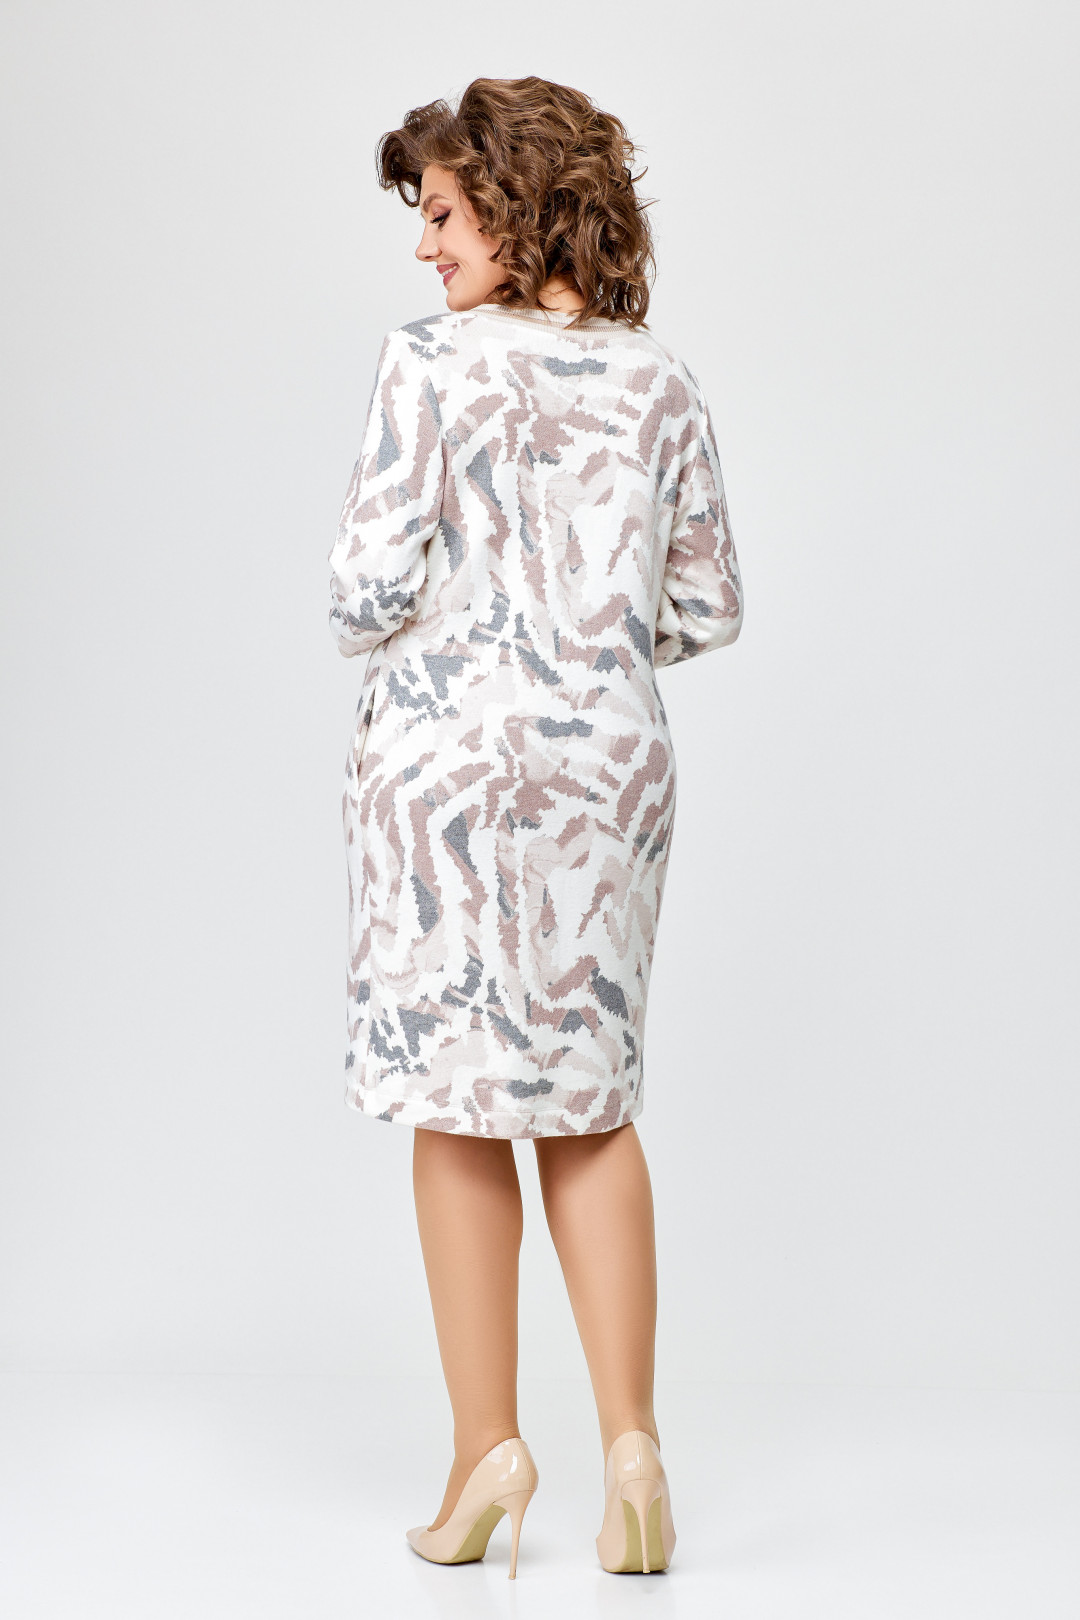 Платье Swallow 686.1 молочный в принт бежево-серый дизайн